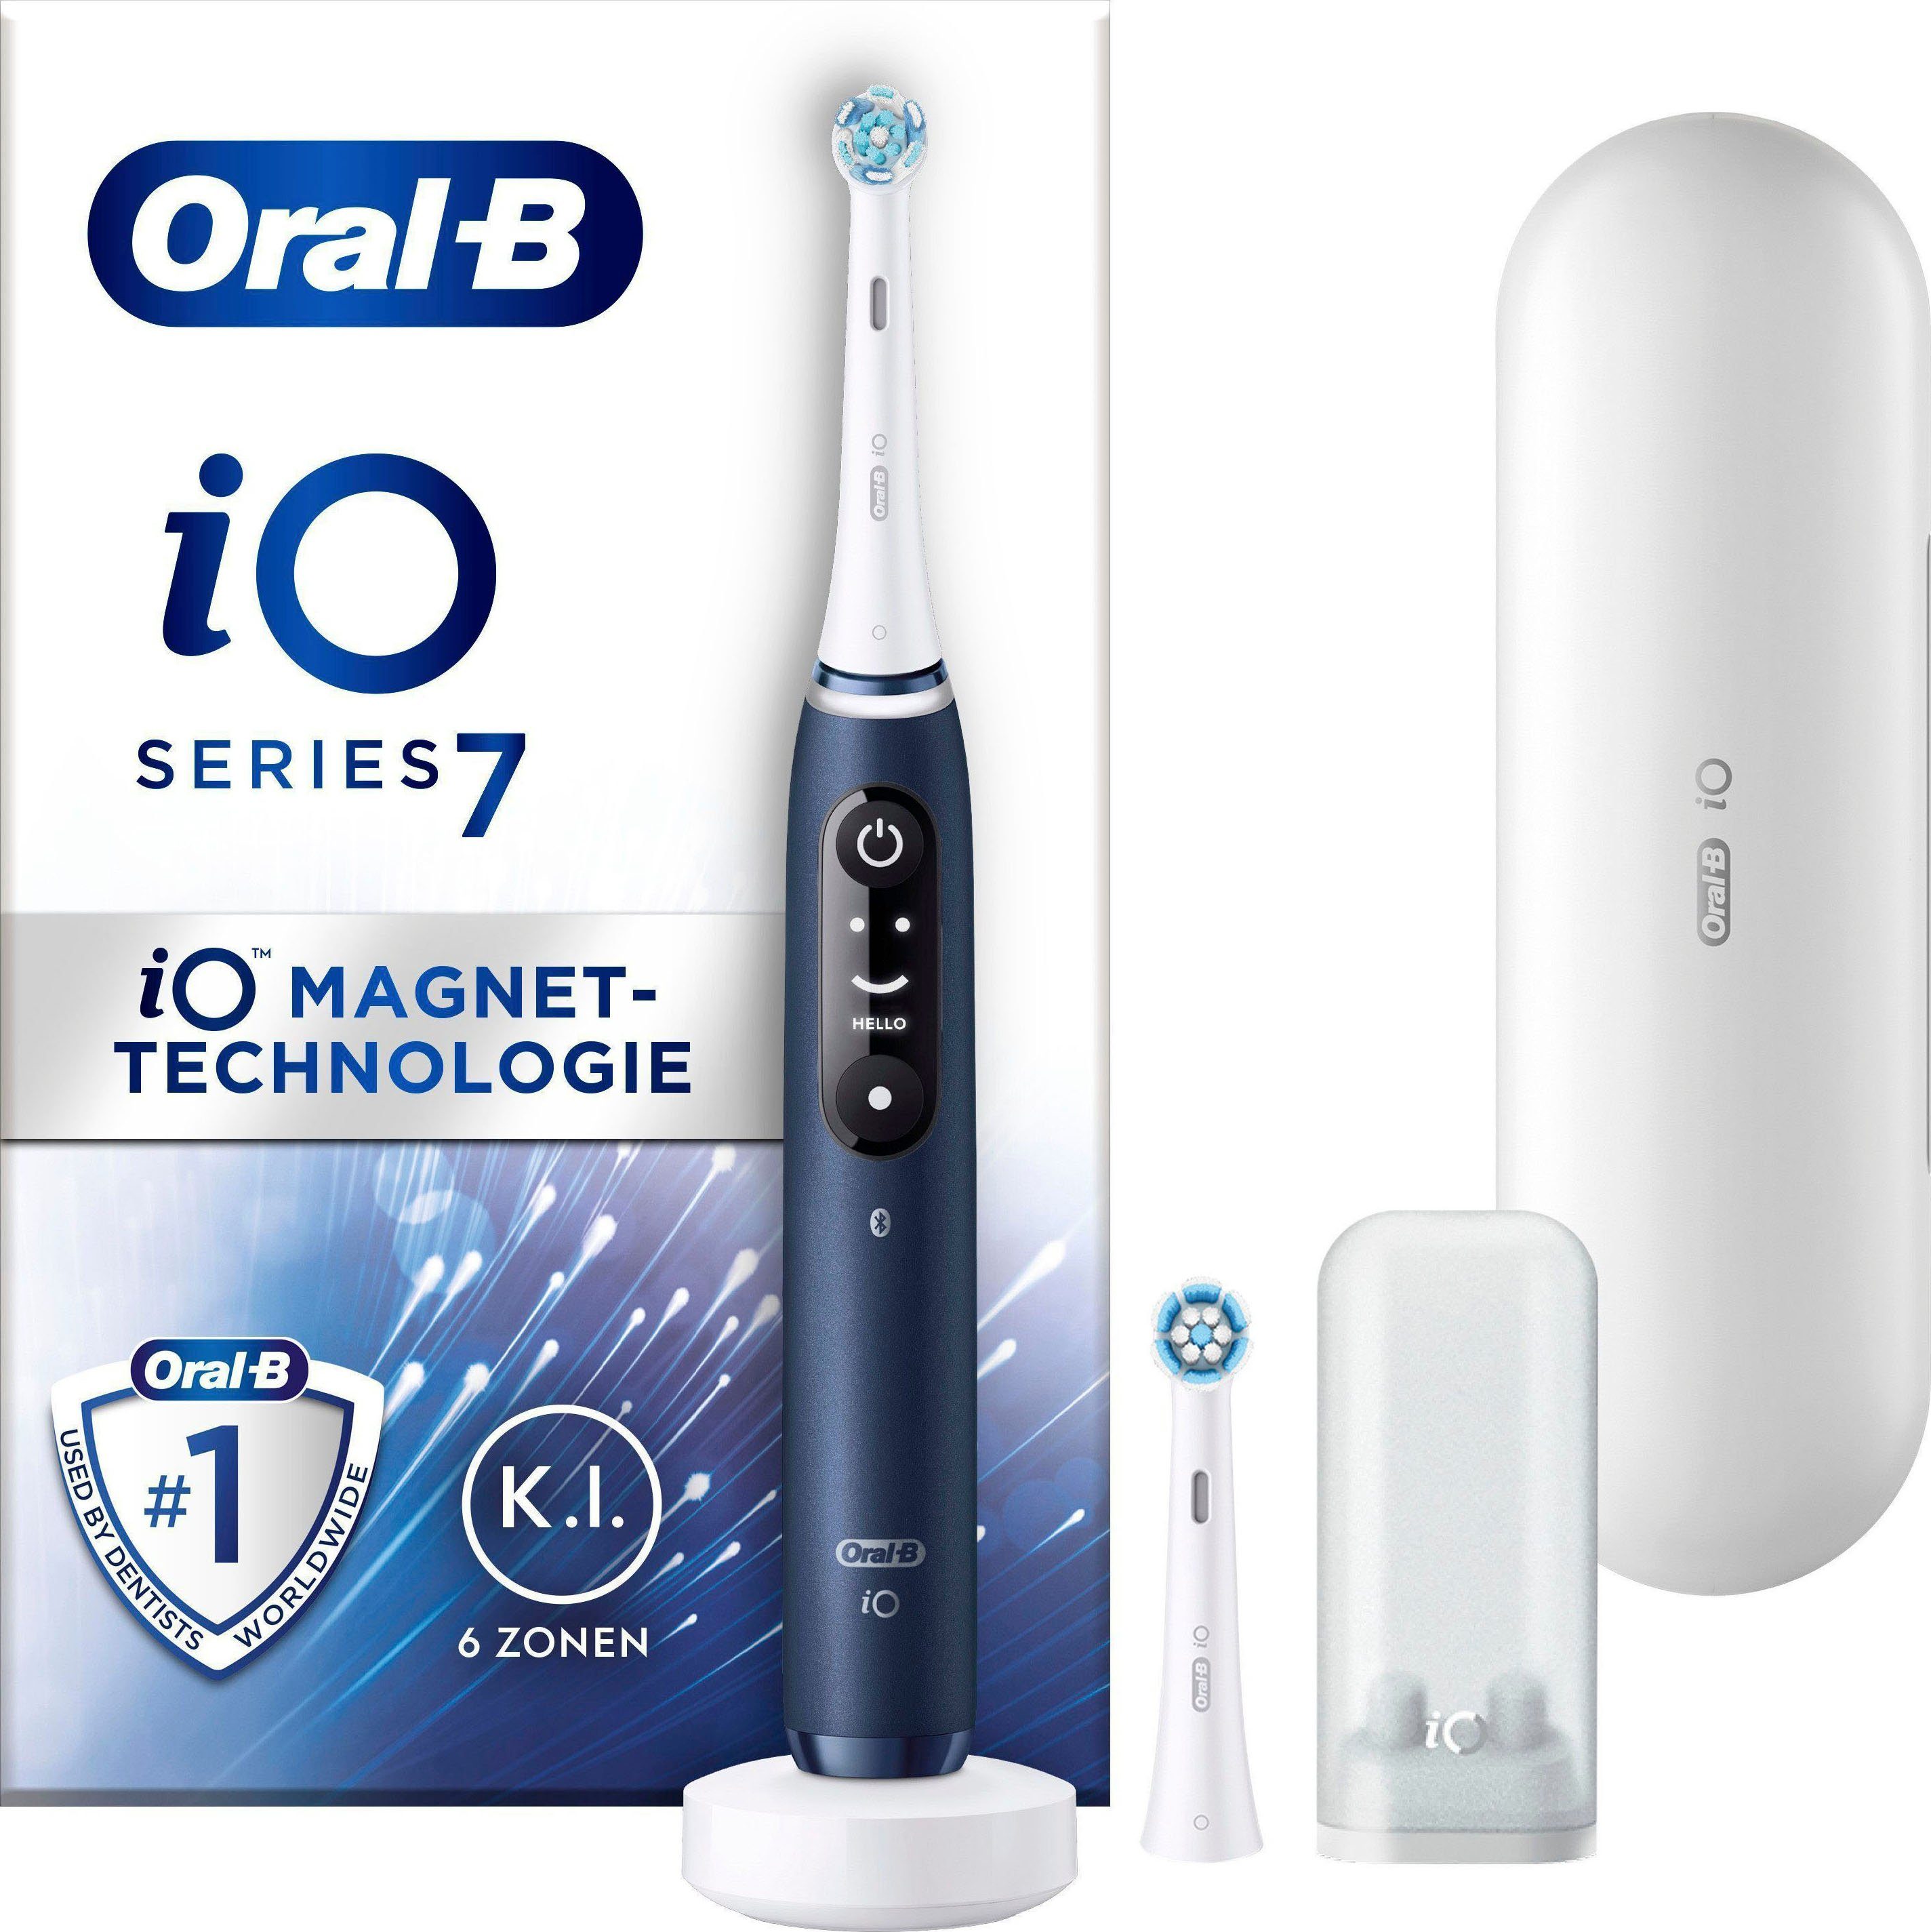 Oral-B Elektrische Zahnbürste iO 7, Aufsteckbürsten: 2 St., mit Magnet-Technologie, Display, 5 Putzmodi, Reiseetui sapphire blue